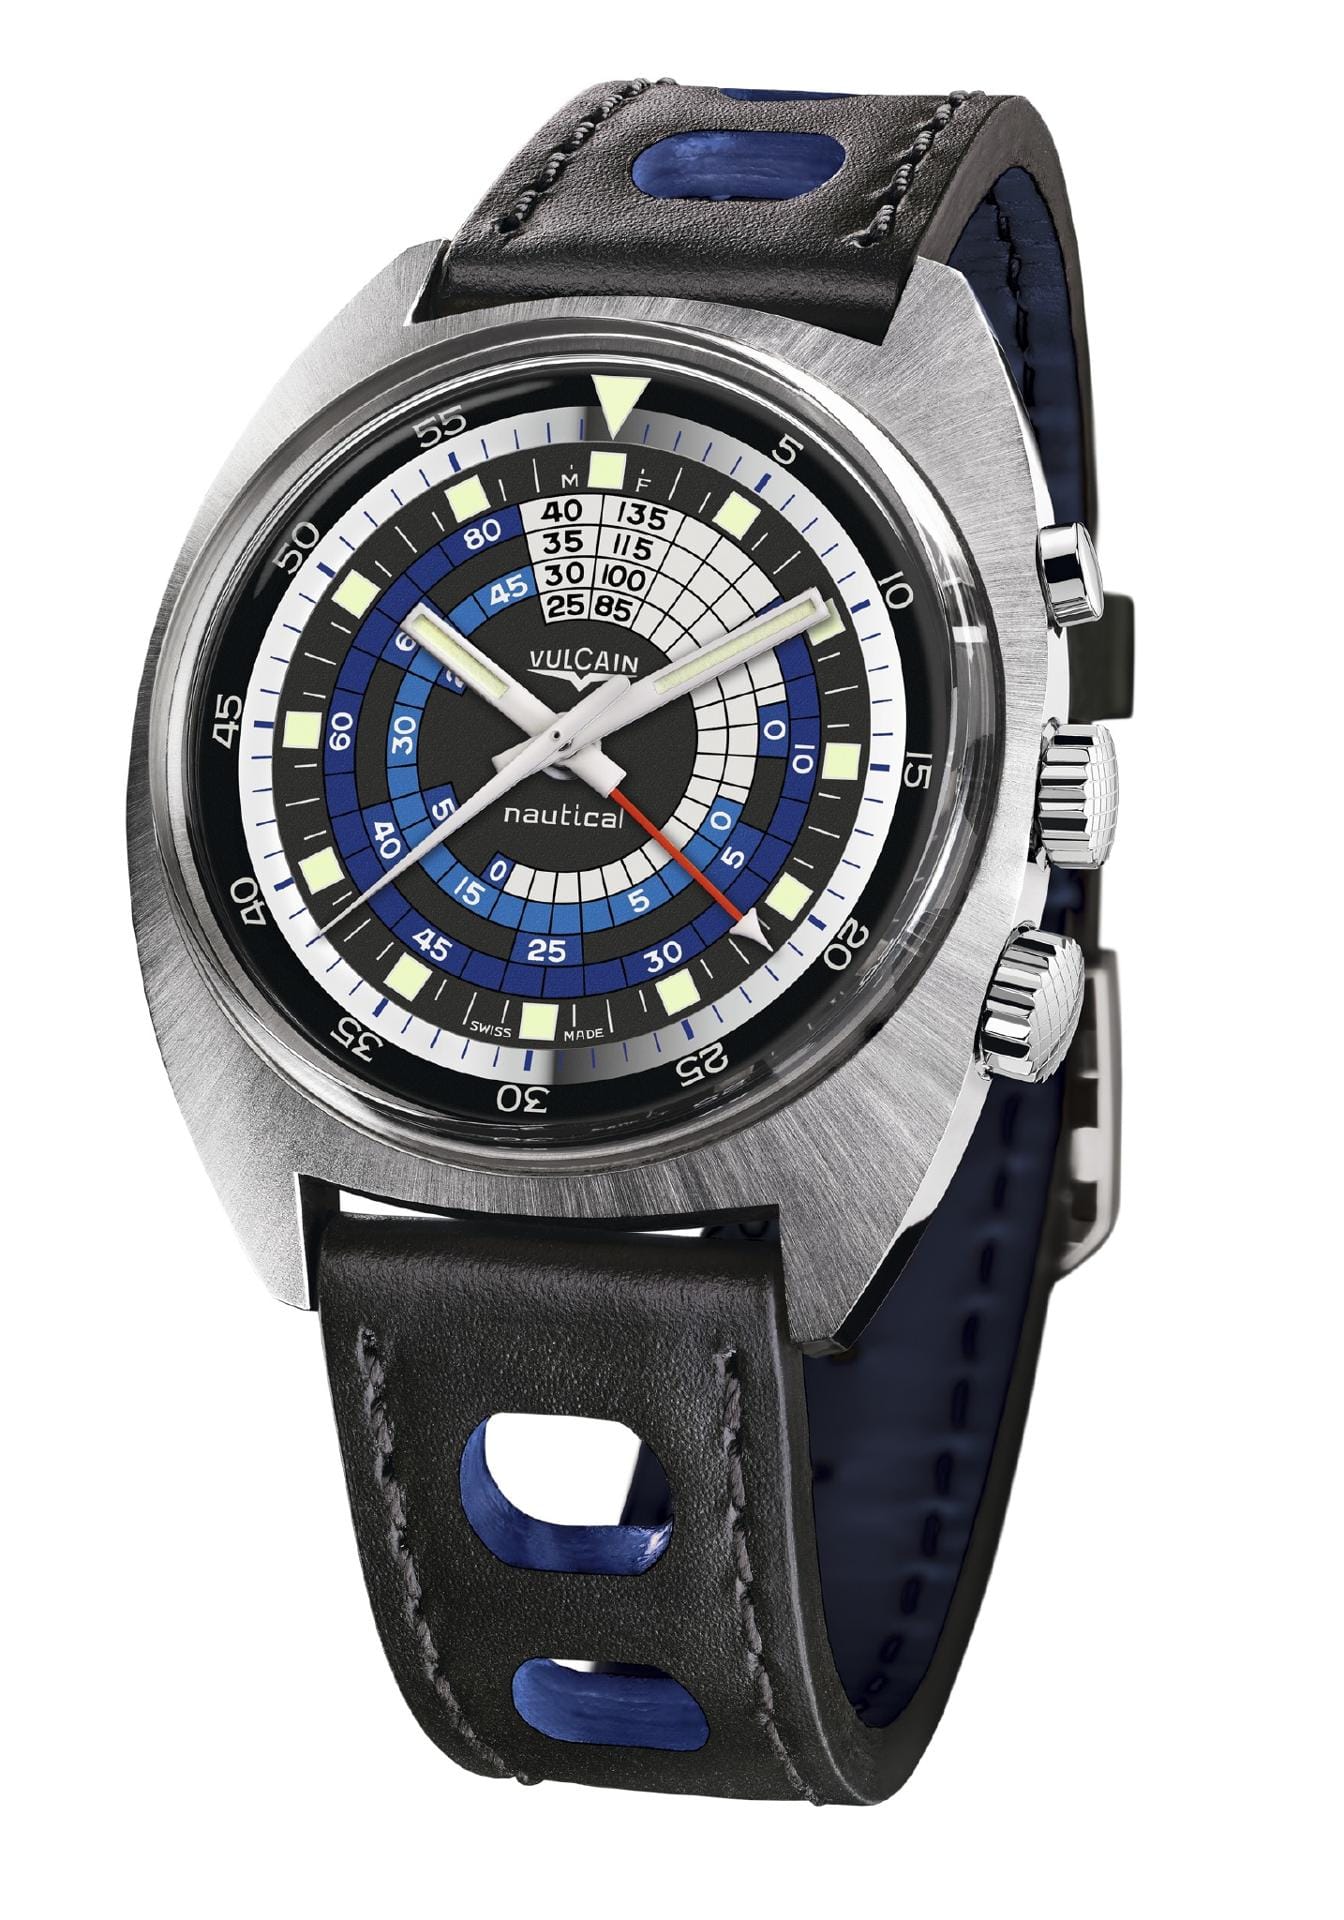 Die Vulcain Nautical Seventies für rund 4000 Euro setzt gekonnt blaue Applikationen im Zifferblatt ein. Das besondere an der Uhr im Retro-Design ist der Weckalarm. Das ist eine Komplikation, die man bei mechanischen Uhren nur selten findet.